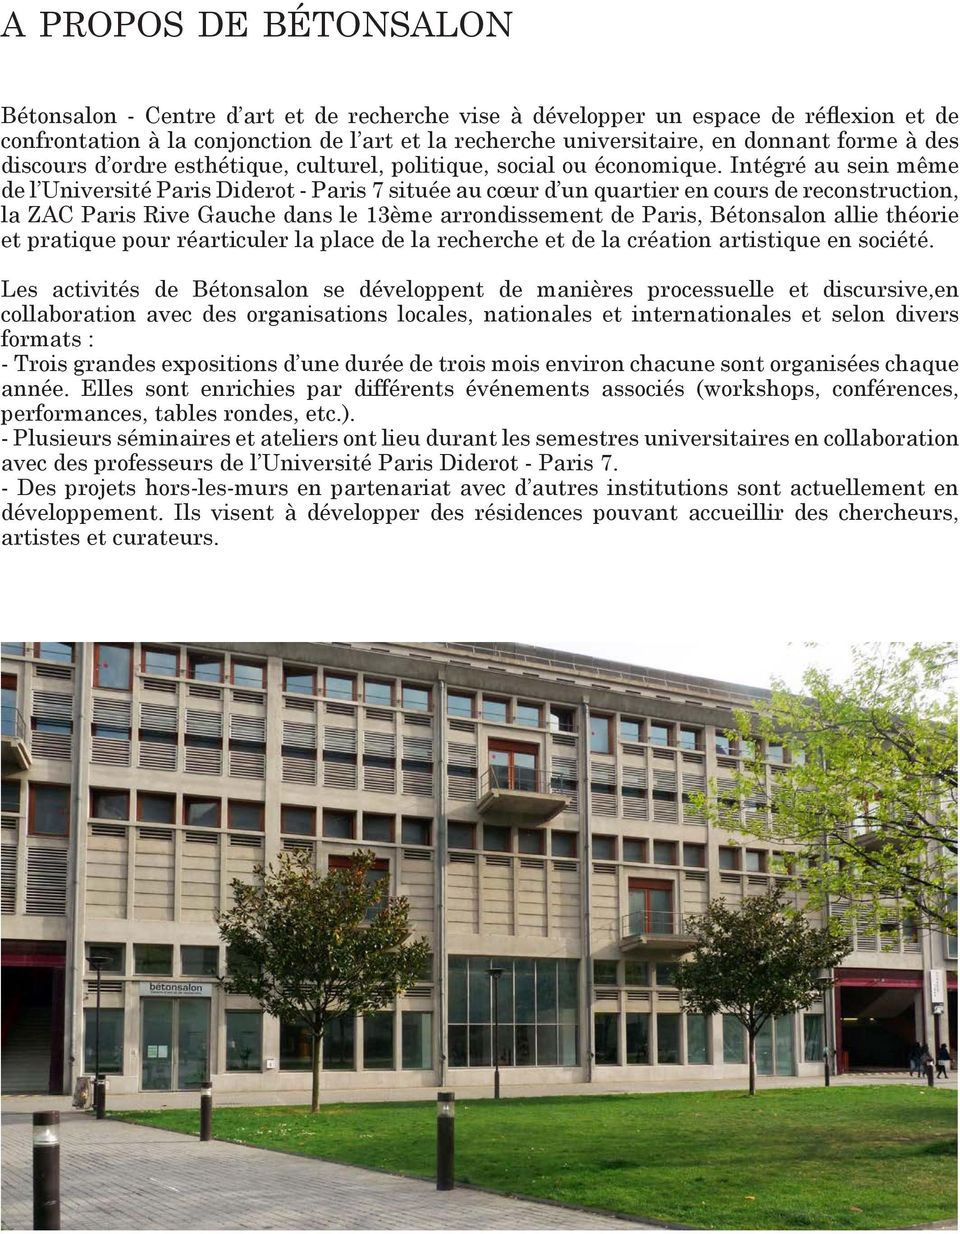 Intégré au sein même de l Université Paris Diderot - Paris 7 située au cœur d un quartier en cours de reconstruction, la ZAC Paris Rive Gauche dans le 13ème arrondissement de Paris, Bétonsalon allie